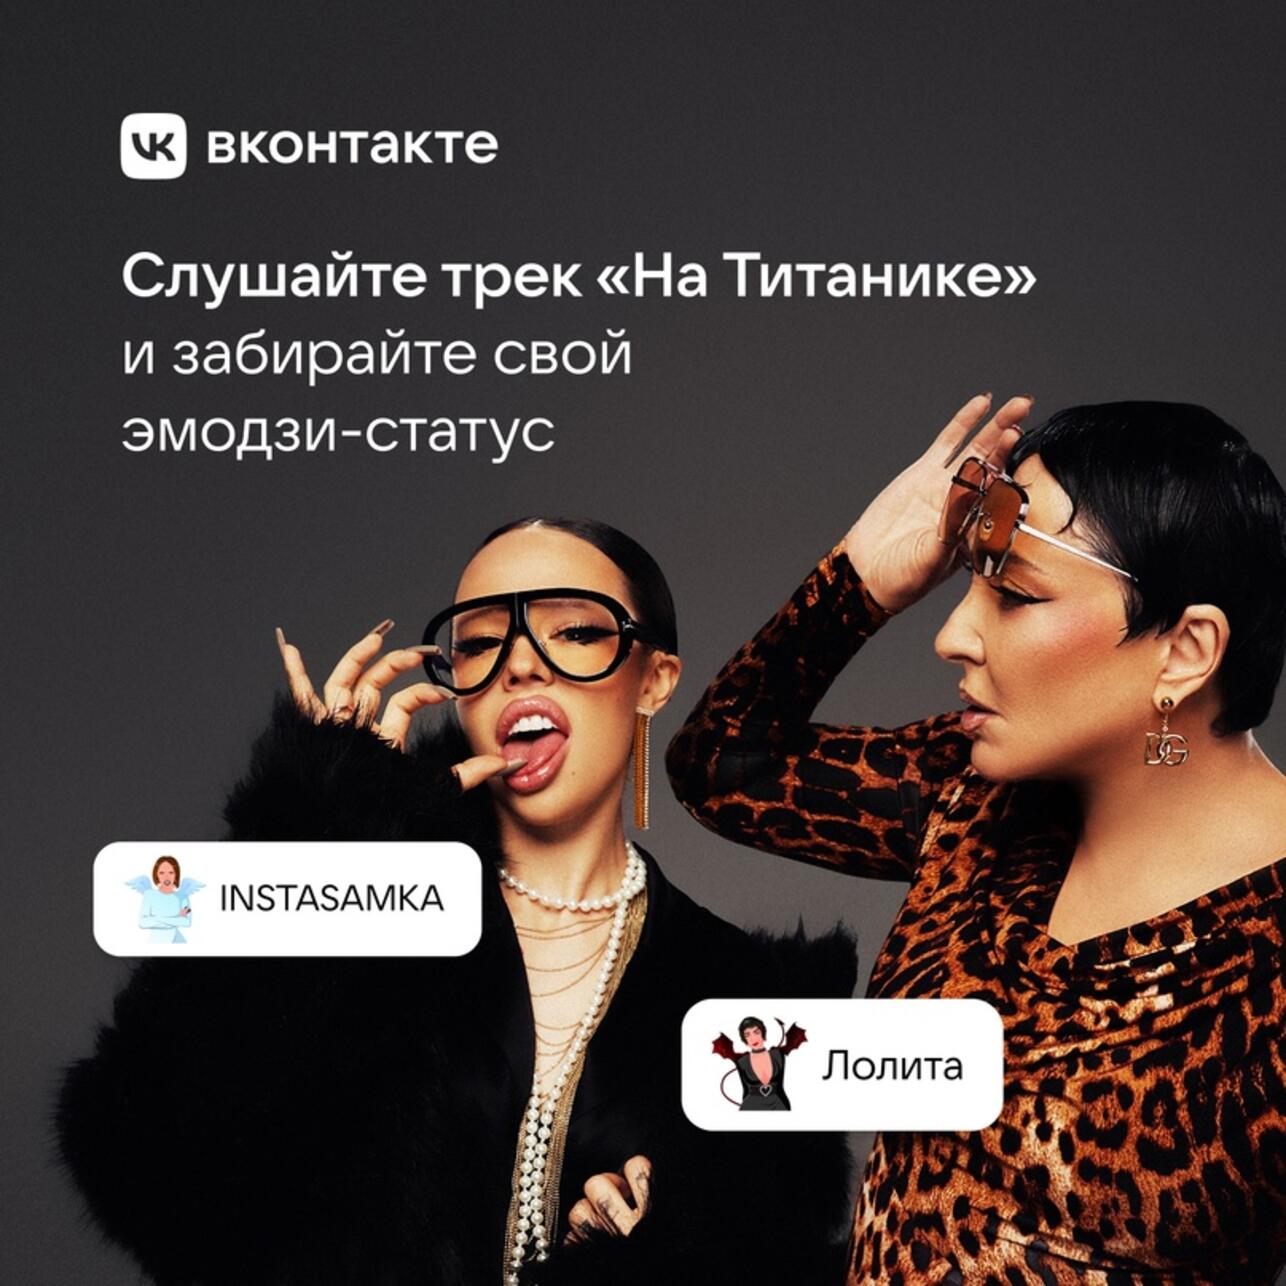 Порно видео из социальной сети Вконтакте смотреть онлайн бесплатно.